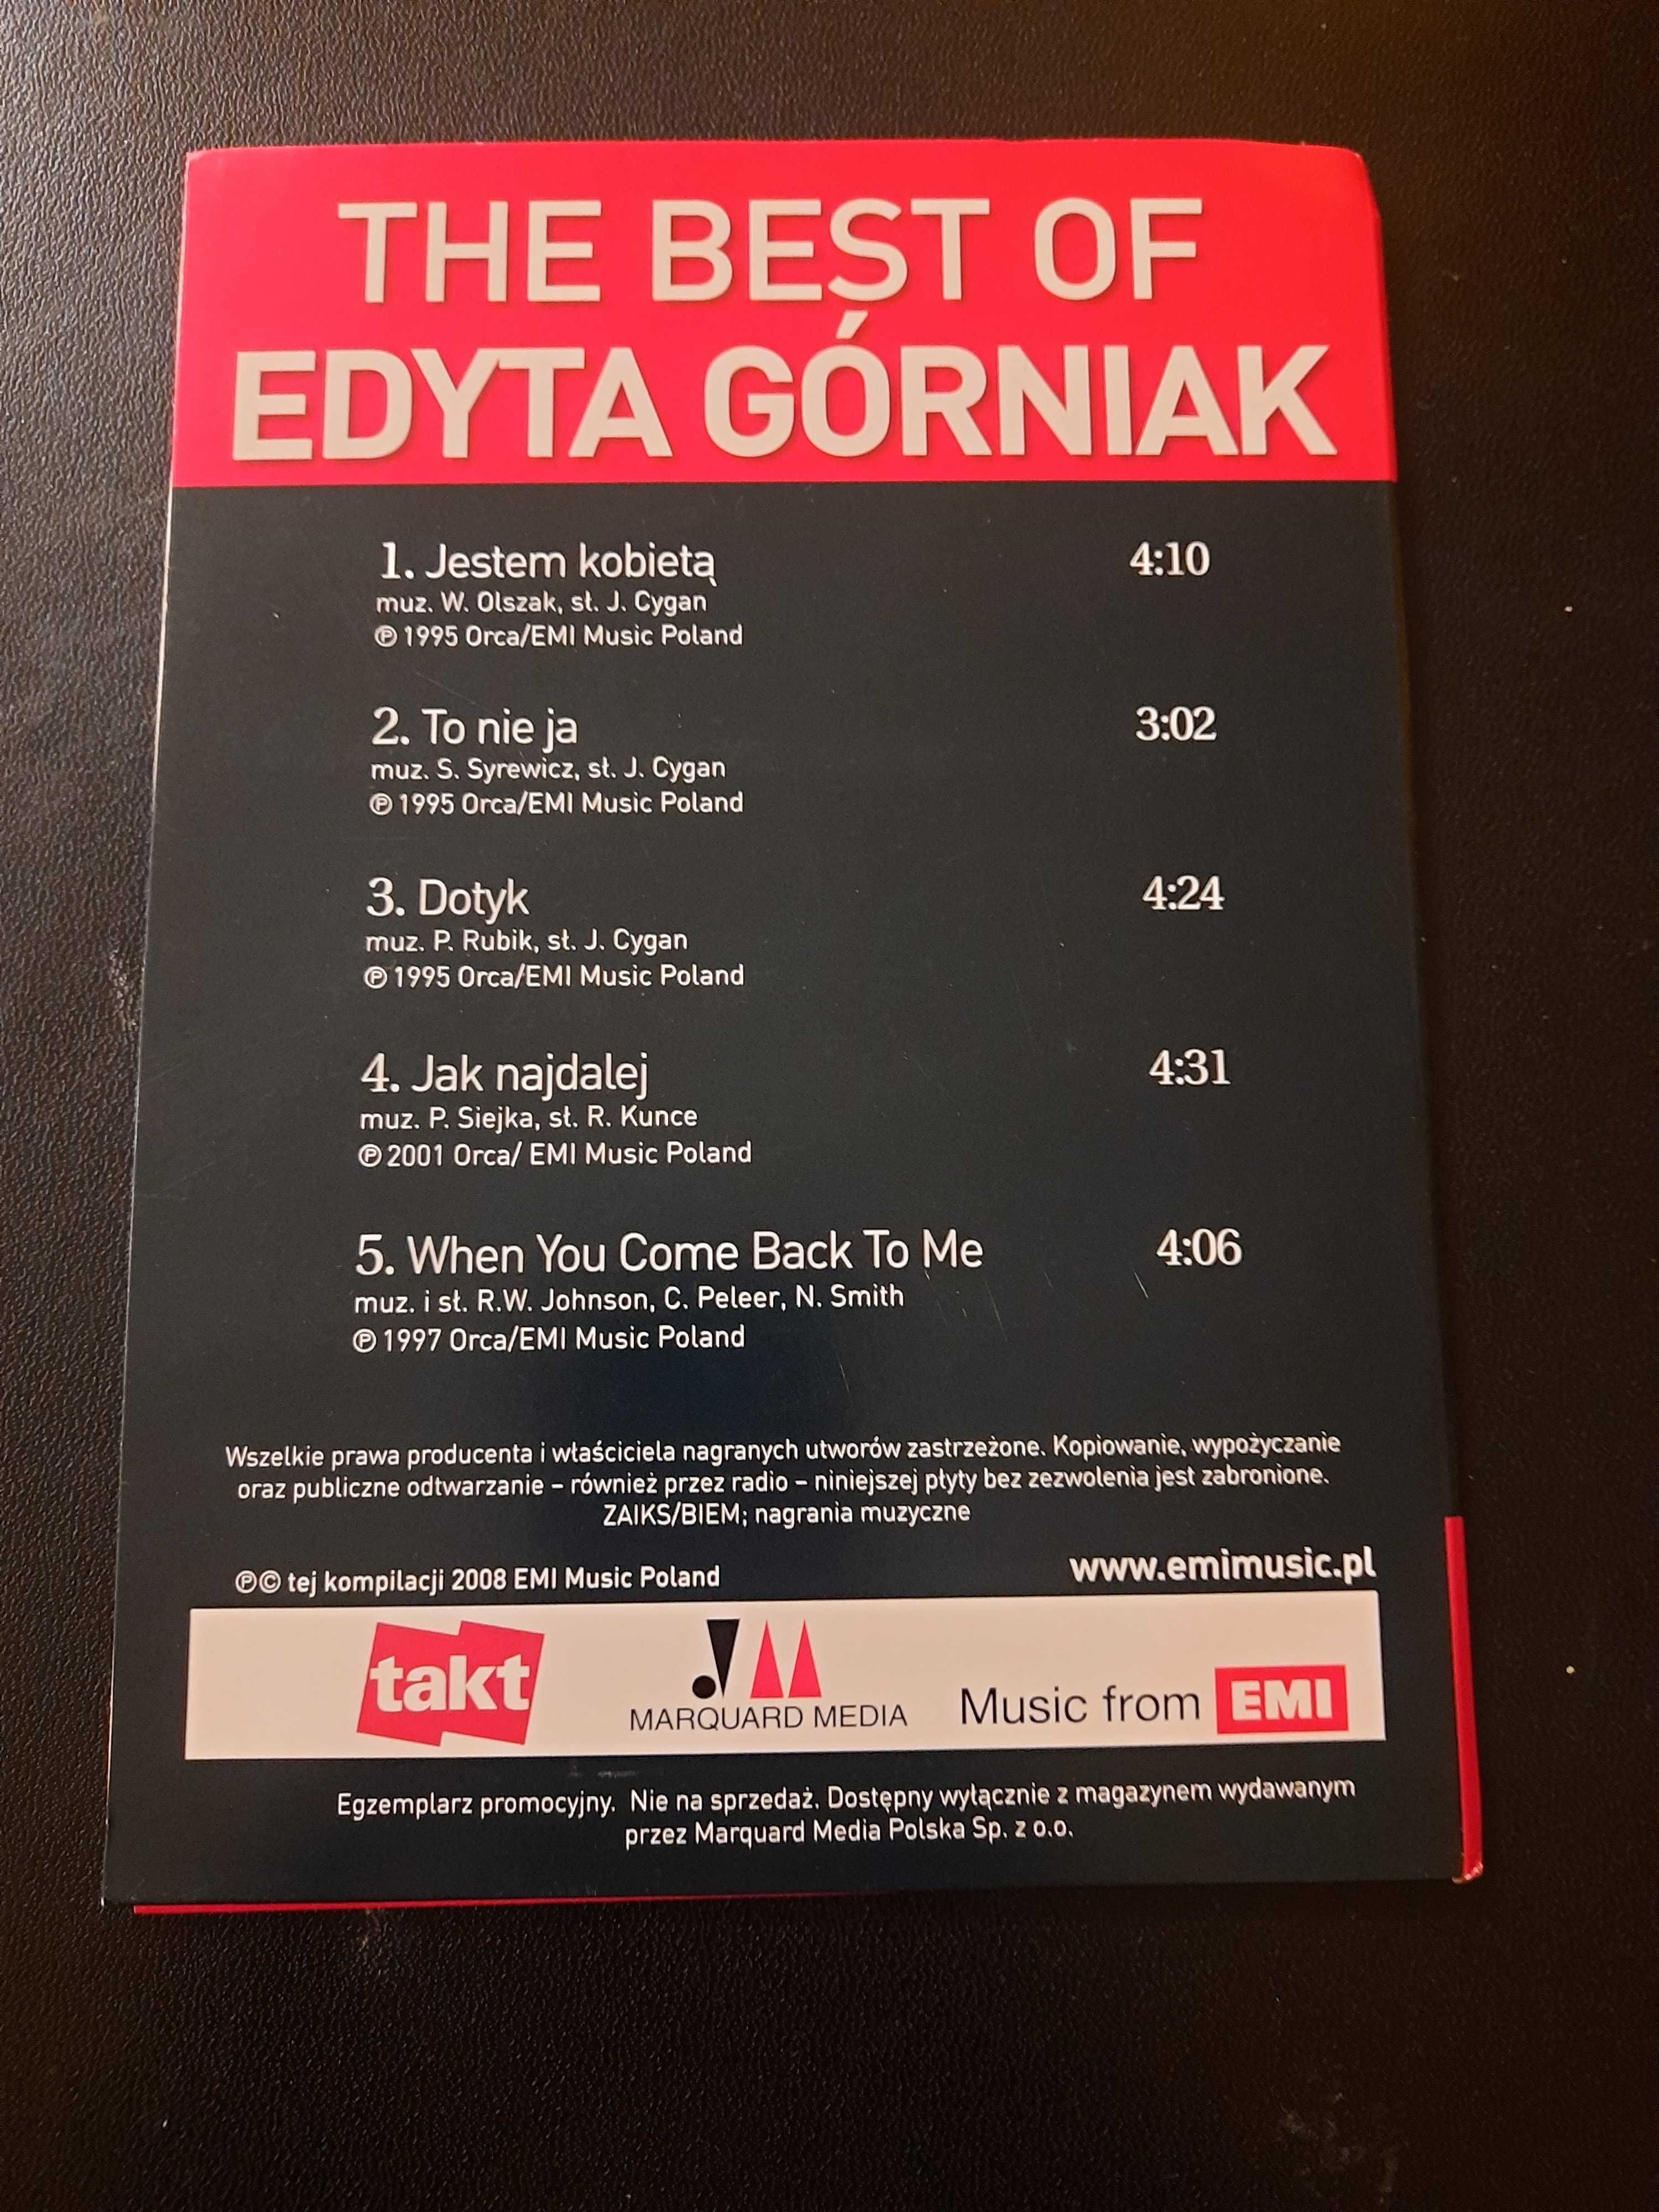 "The best of Edyta Górniak"